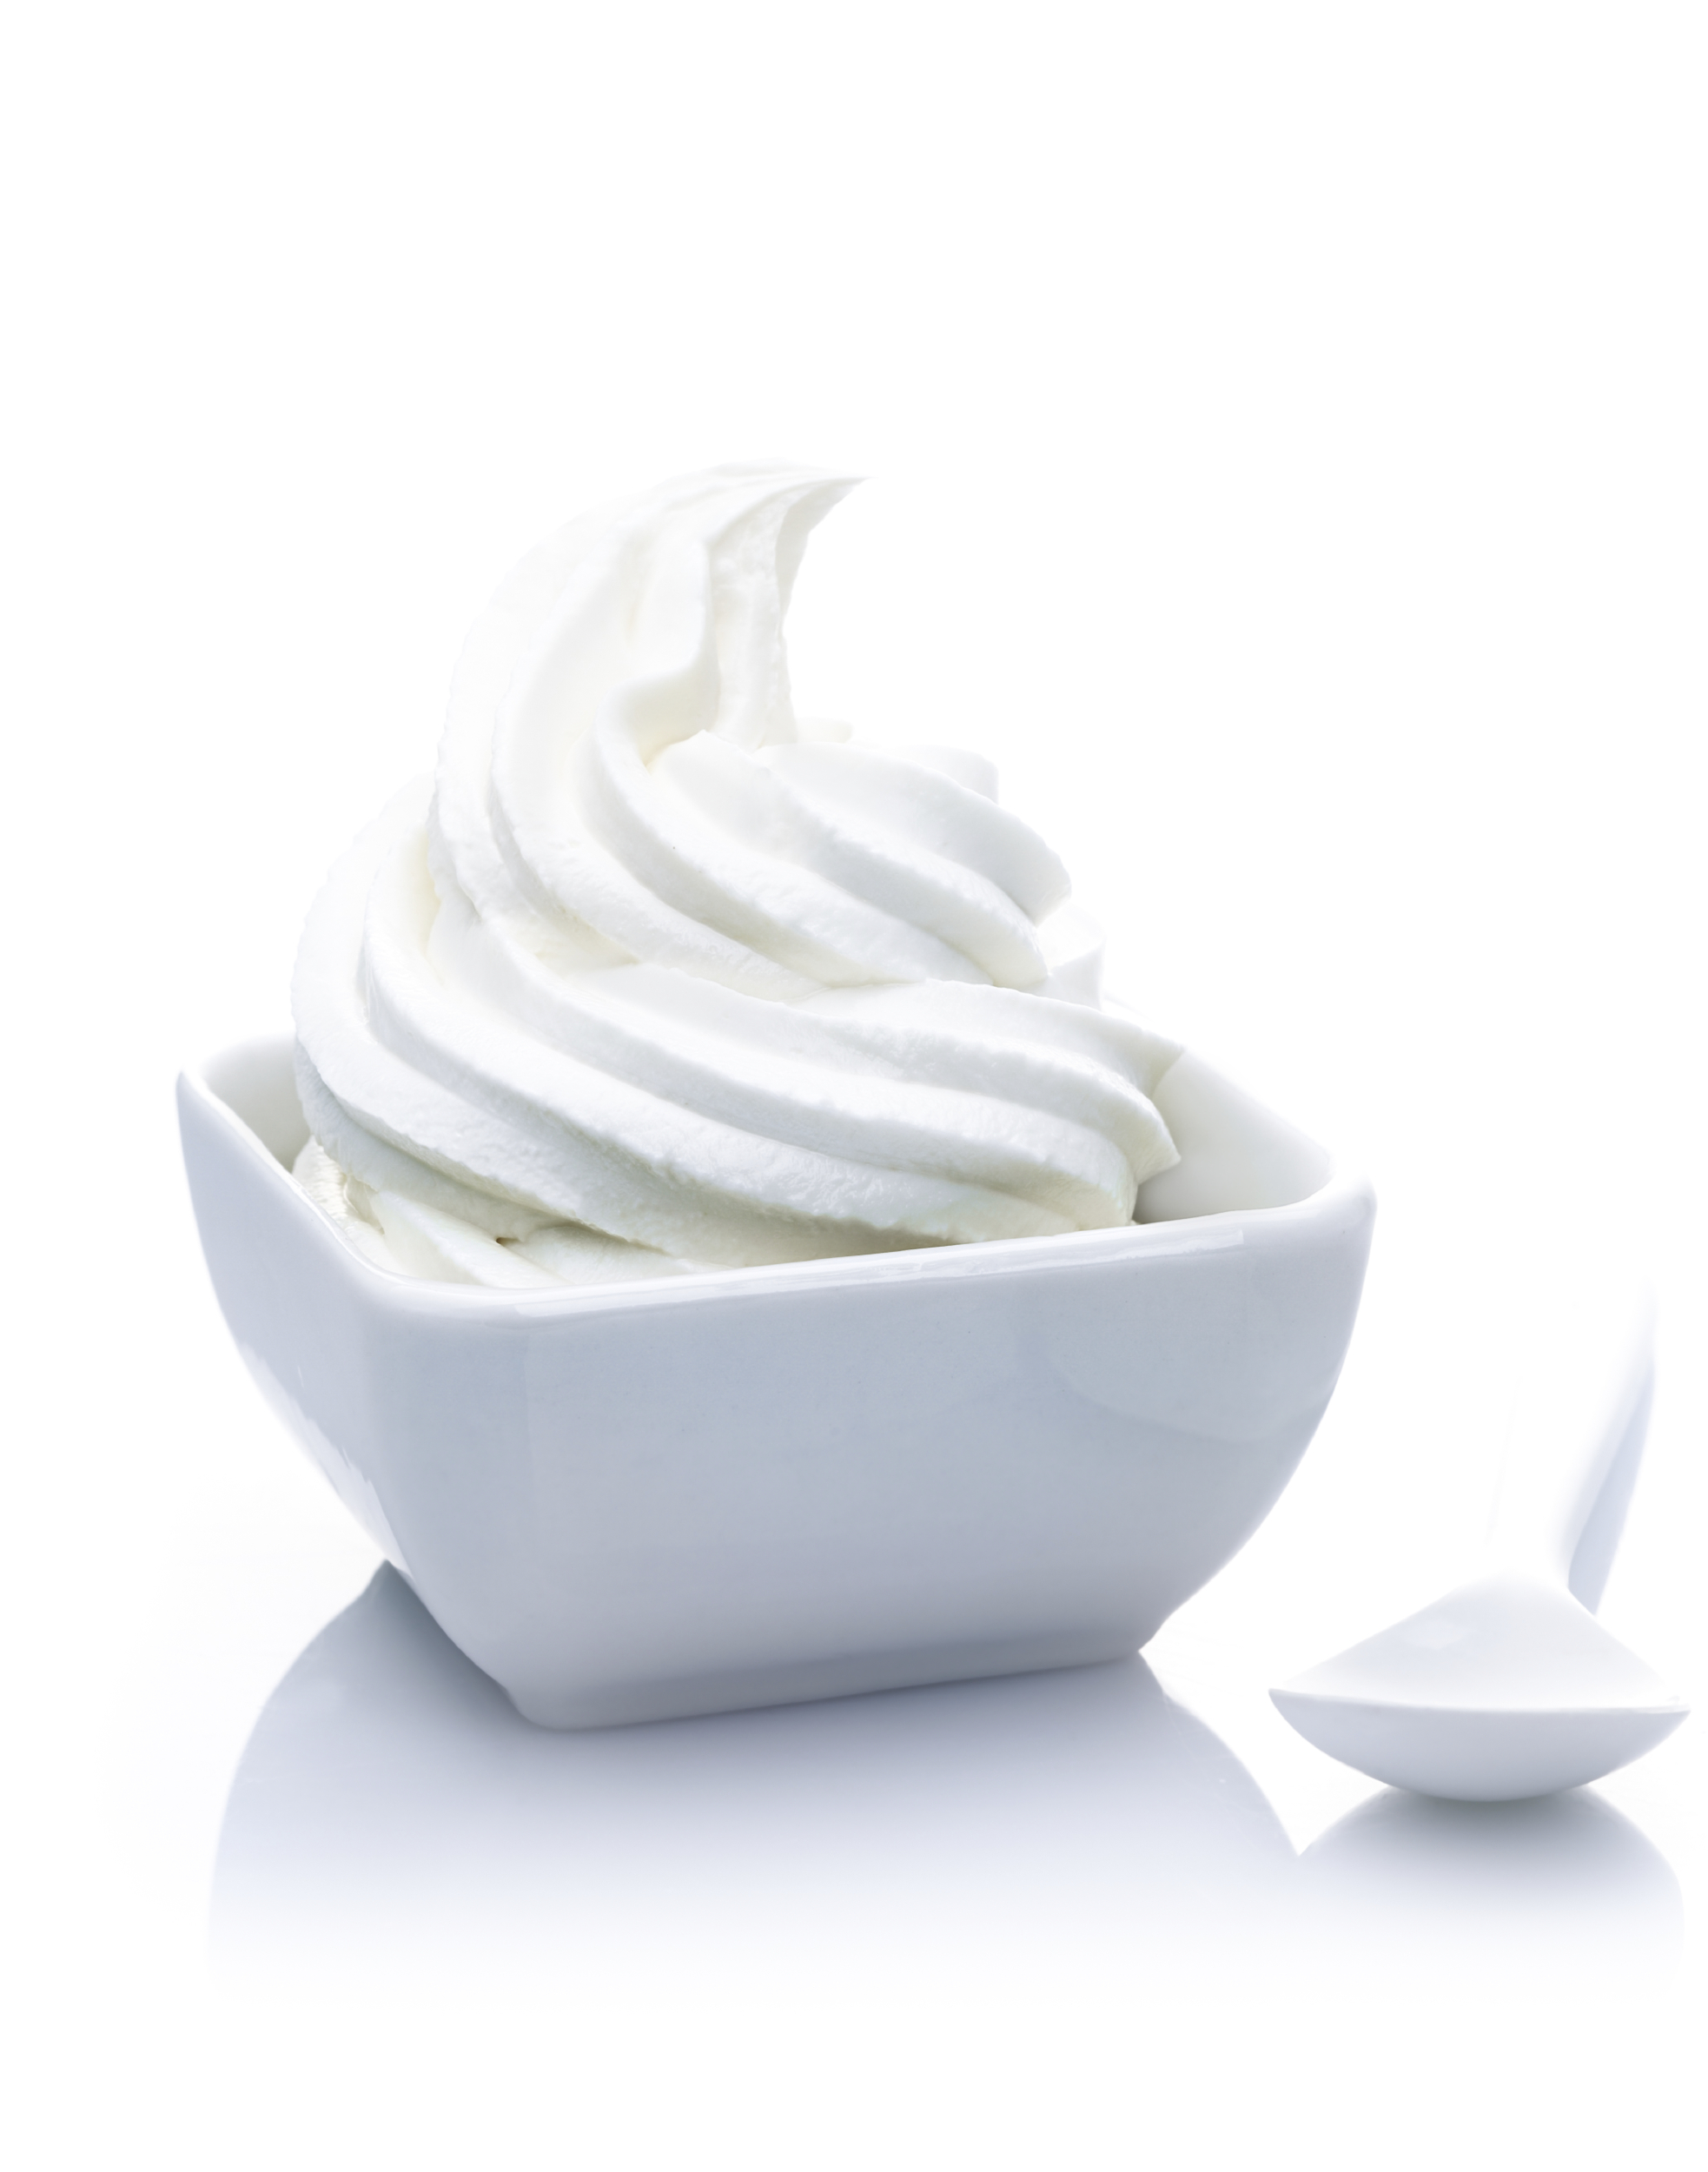 bulk frozen yogurt